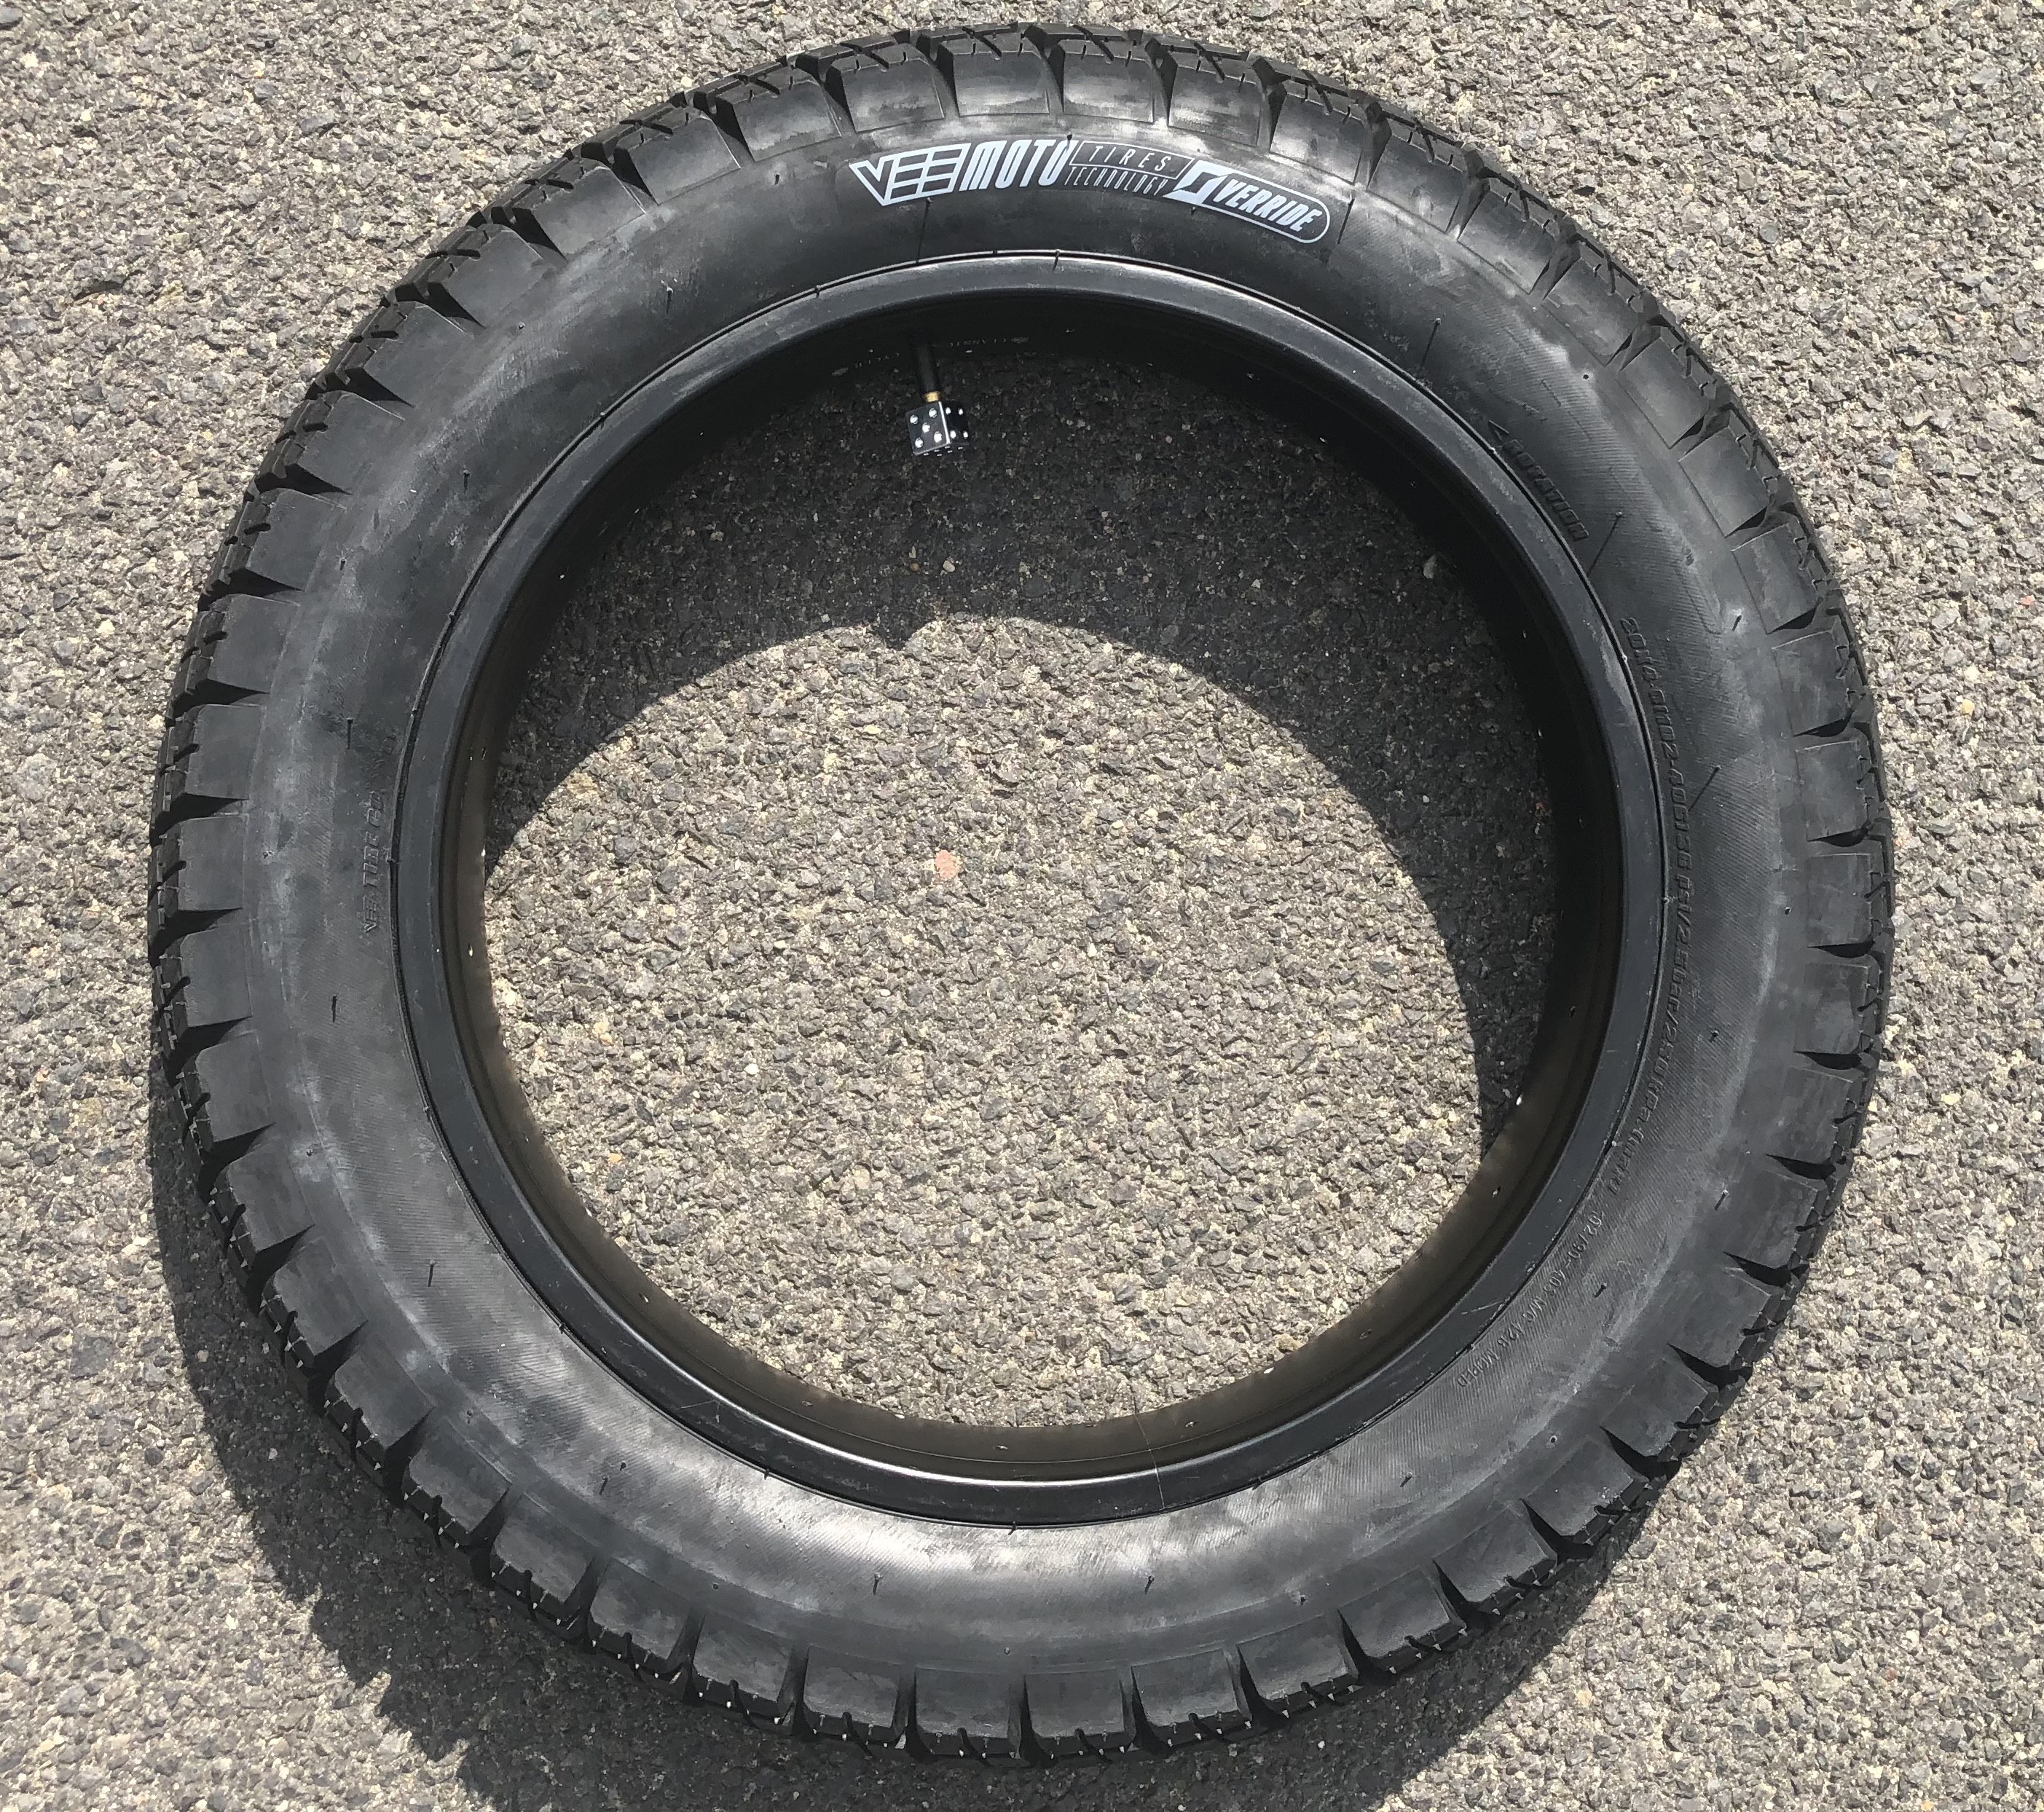 204  E-Huntsman Tire 20 x 4.0  inch pure black